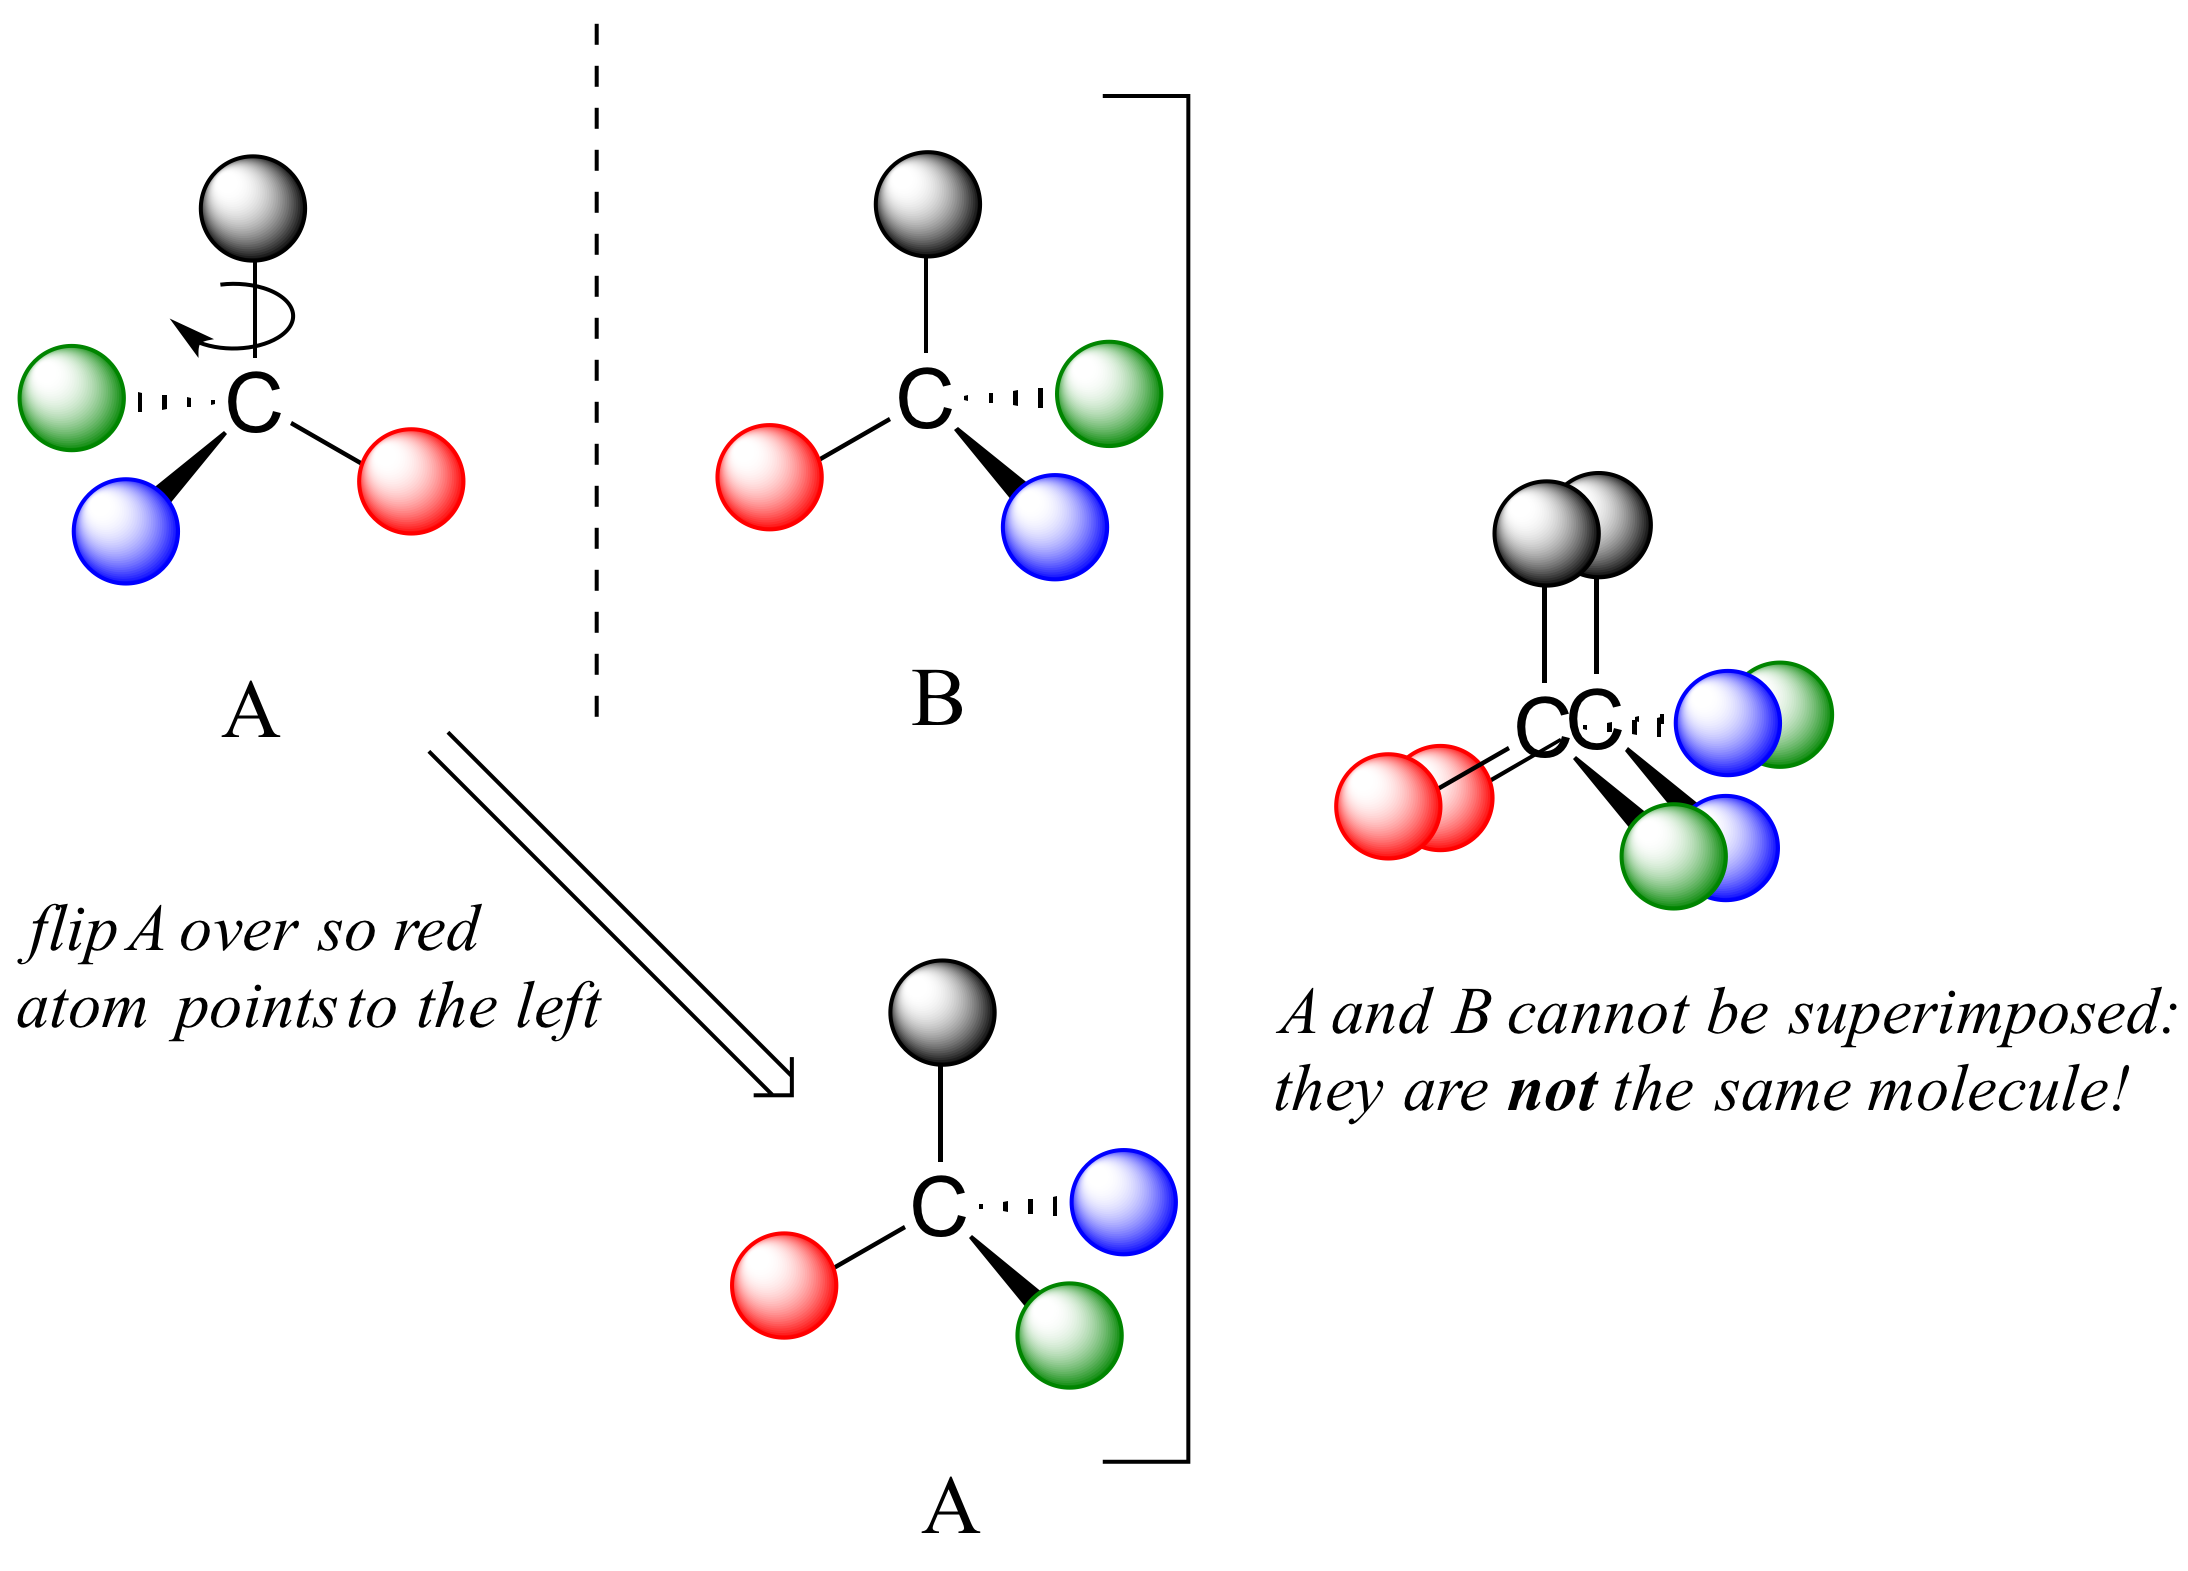 La Molécula A comienza con el átomo rojo a la derecha. Se voltea de manera que los átomos rojos apuntan hacia la izquierda (como la molécula B). Moléculas A y B alineadas. Los átomos azules y verdes no se alinean por lo que A y B no se pueden superponer: no son la misma molécula.